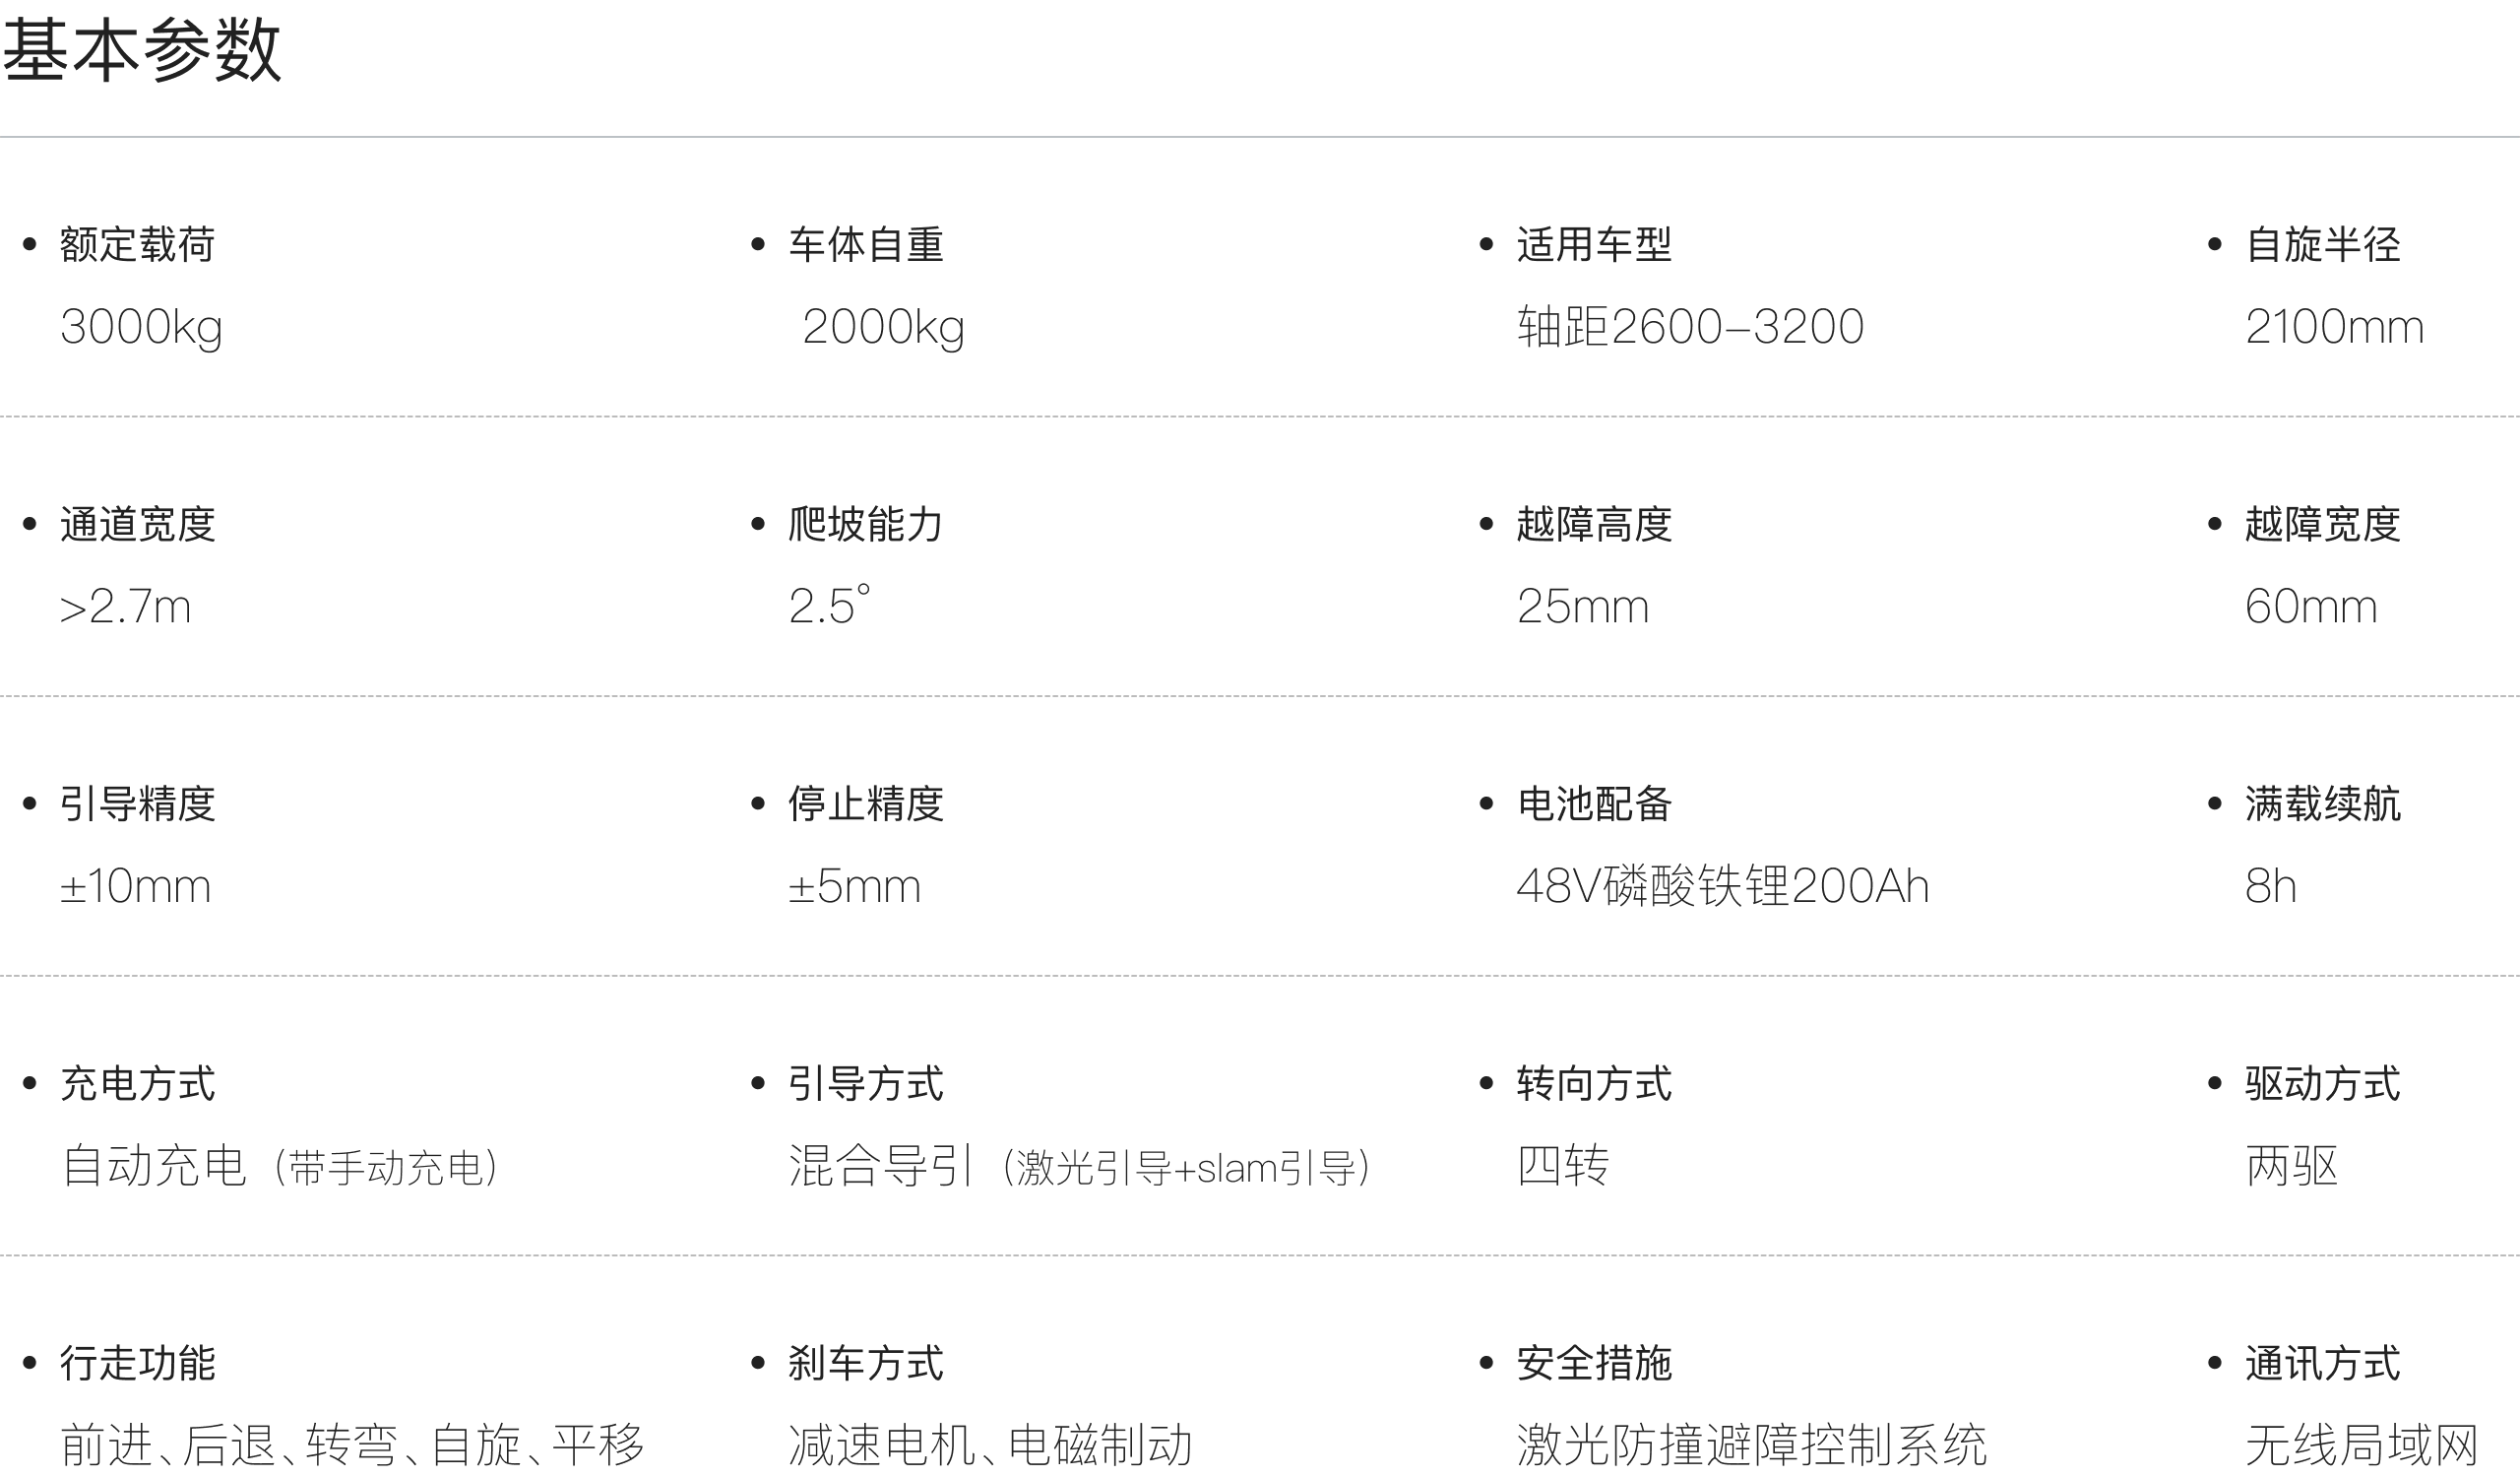 basicParameter